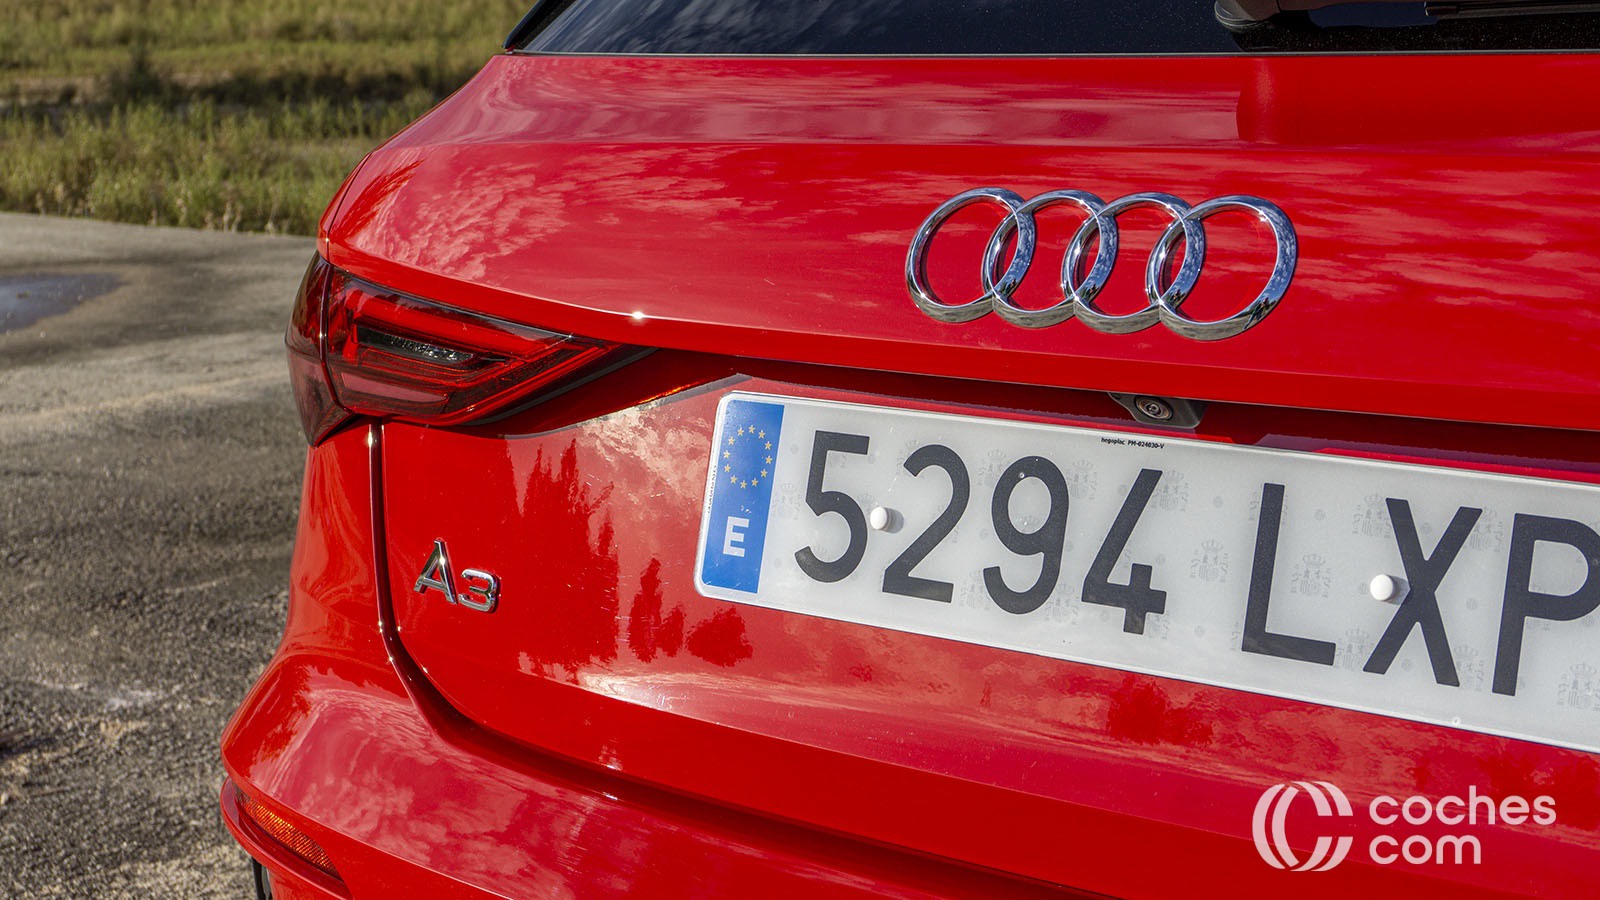 Retirar las marcas de los pesos de equilibrado - Mecánica Audi A3